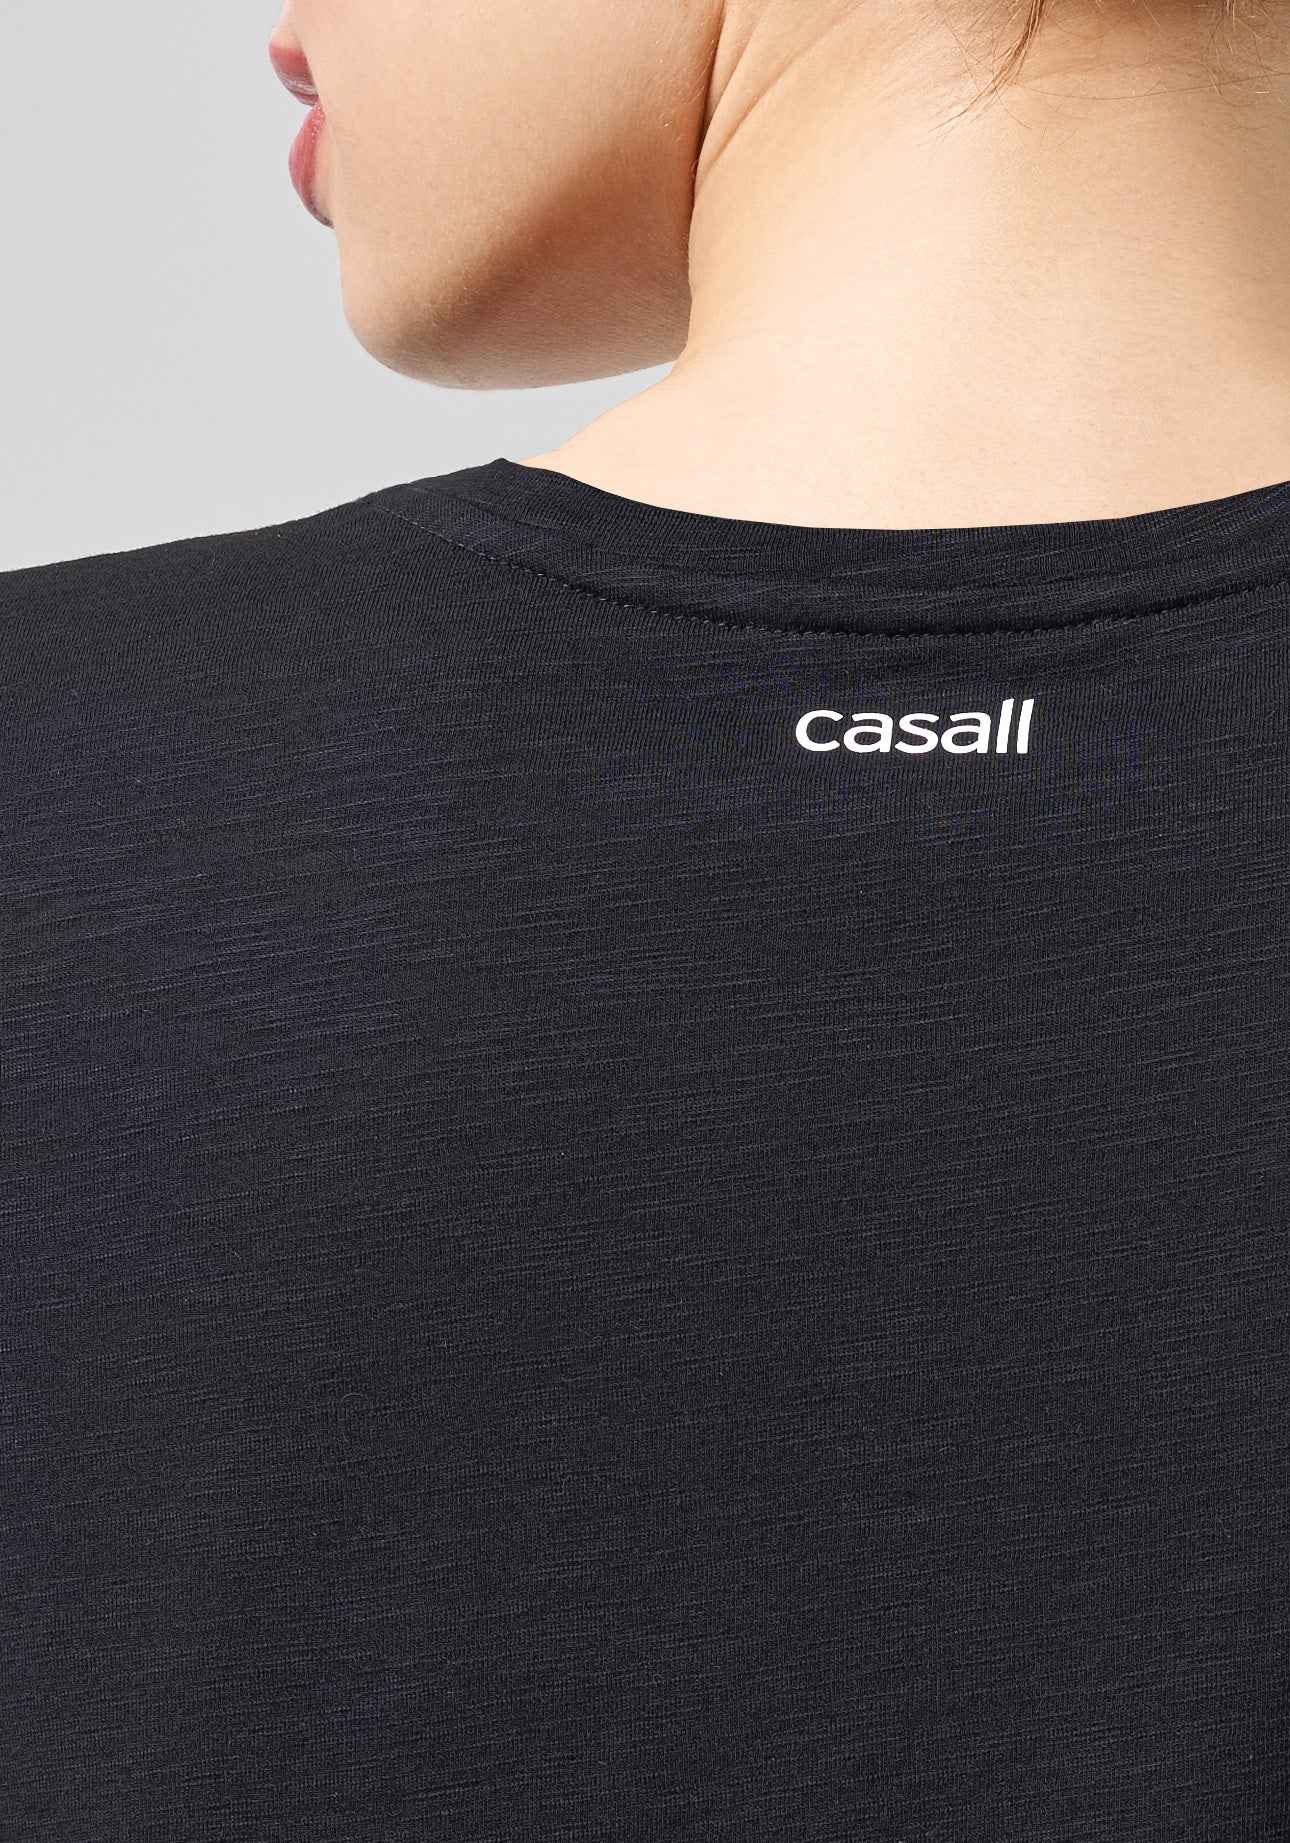 Casall Soft Texture Tee - Black